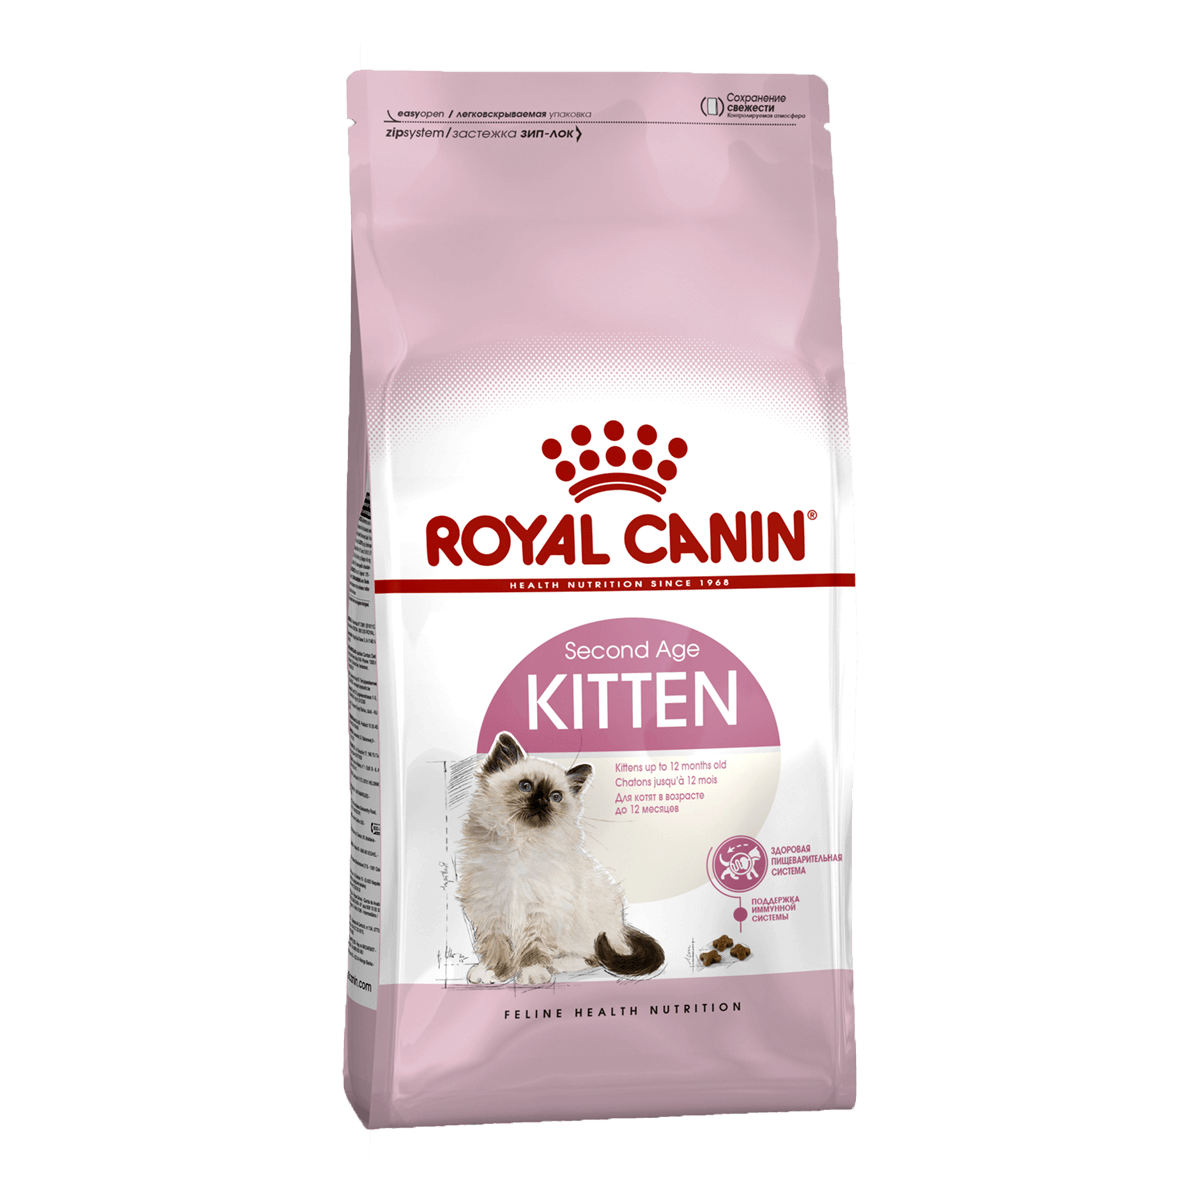 Royal Canin Kitten, 4 кг - корм Роял Канин для котят